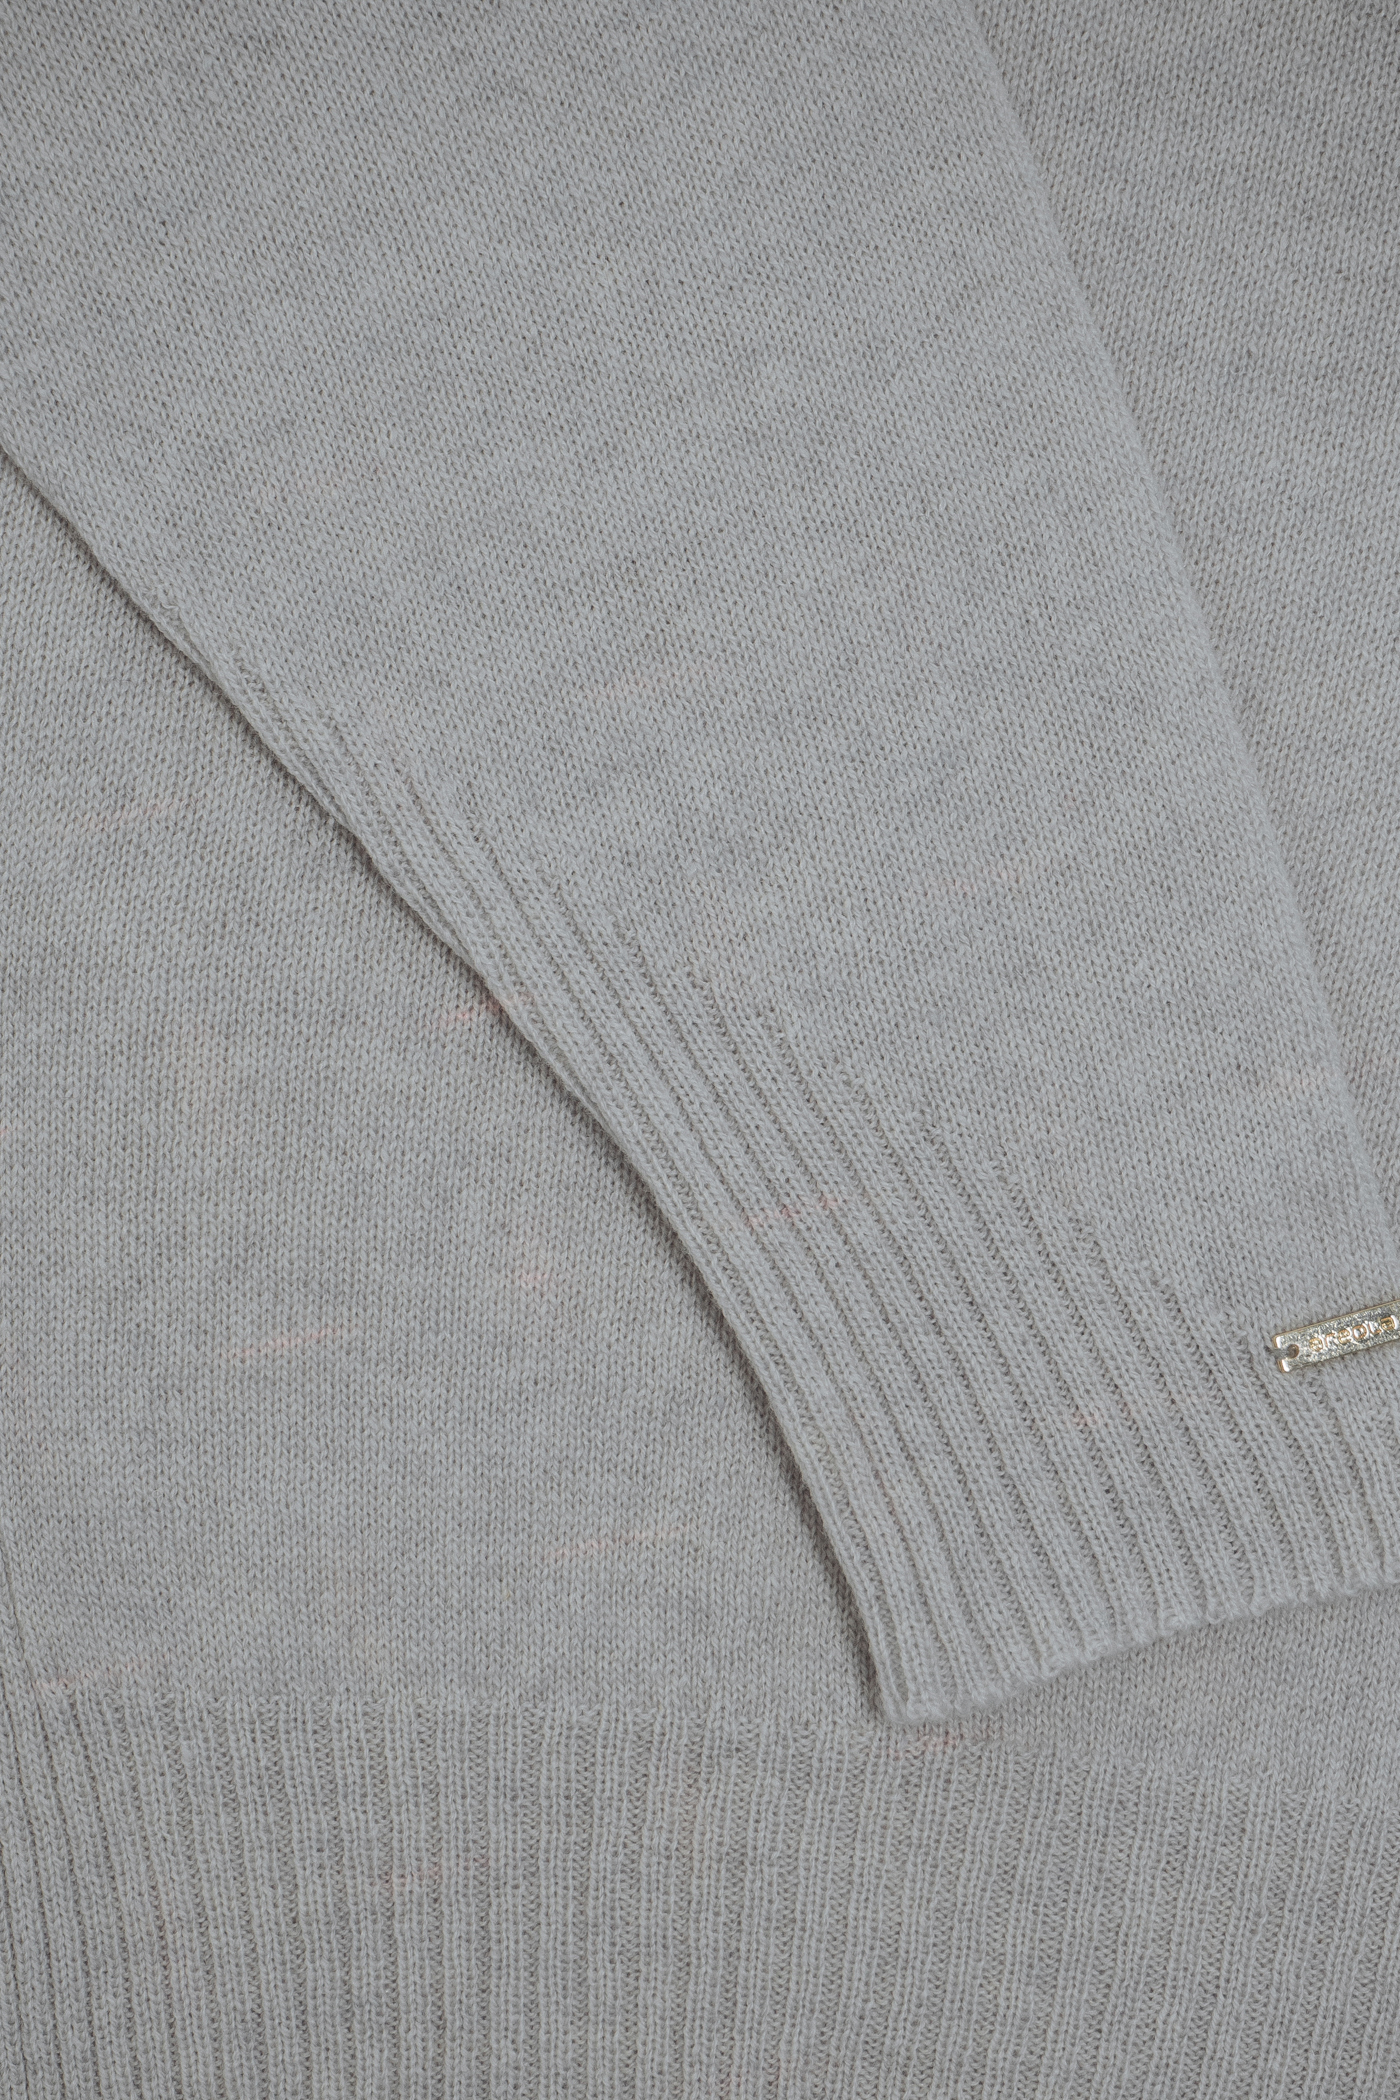 Джемпер 10495  - трикотажная одежда Ареола